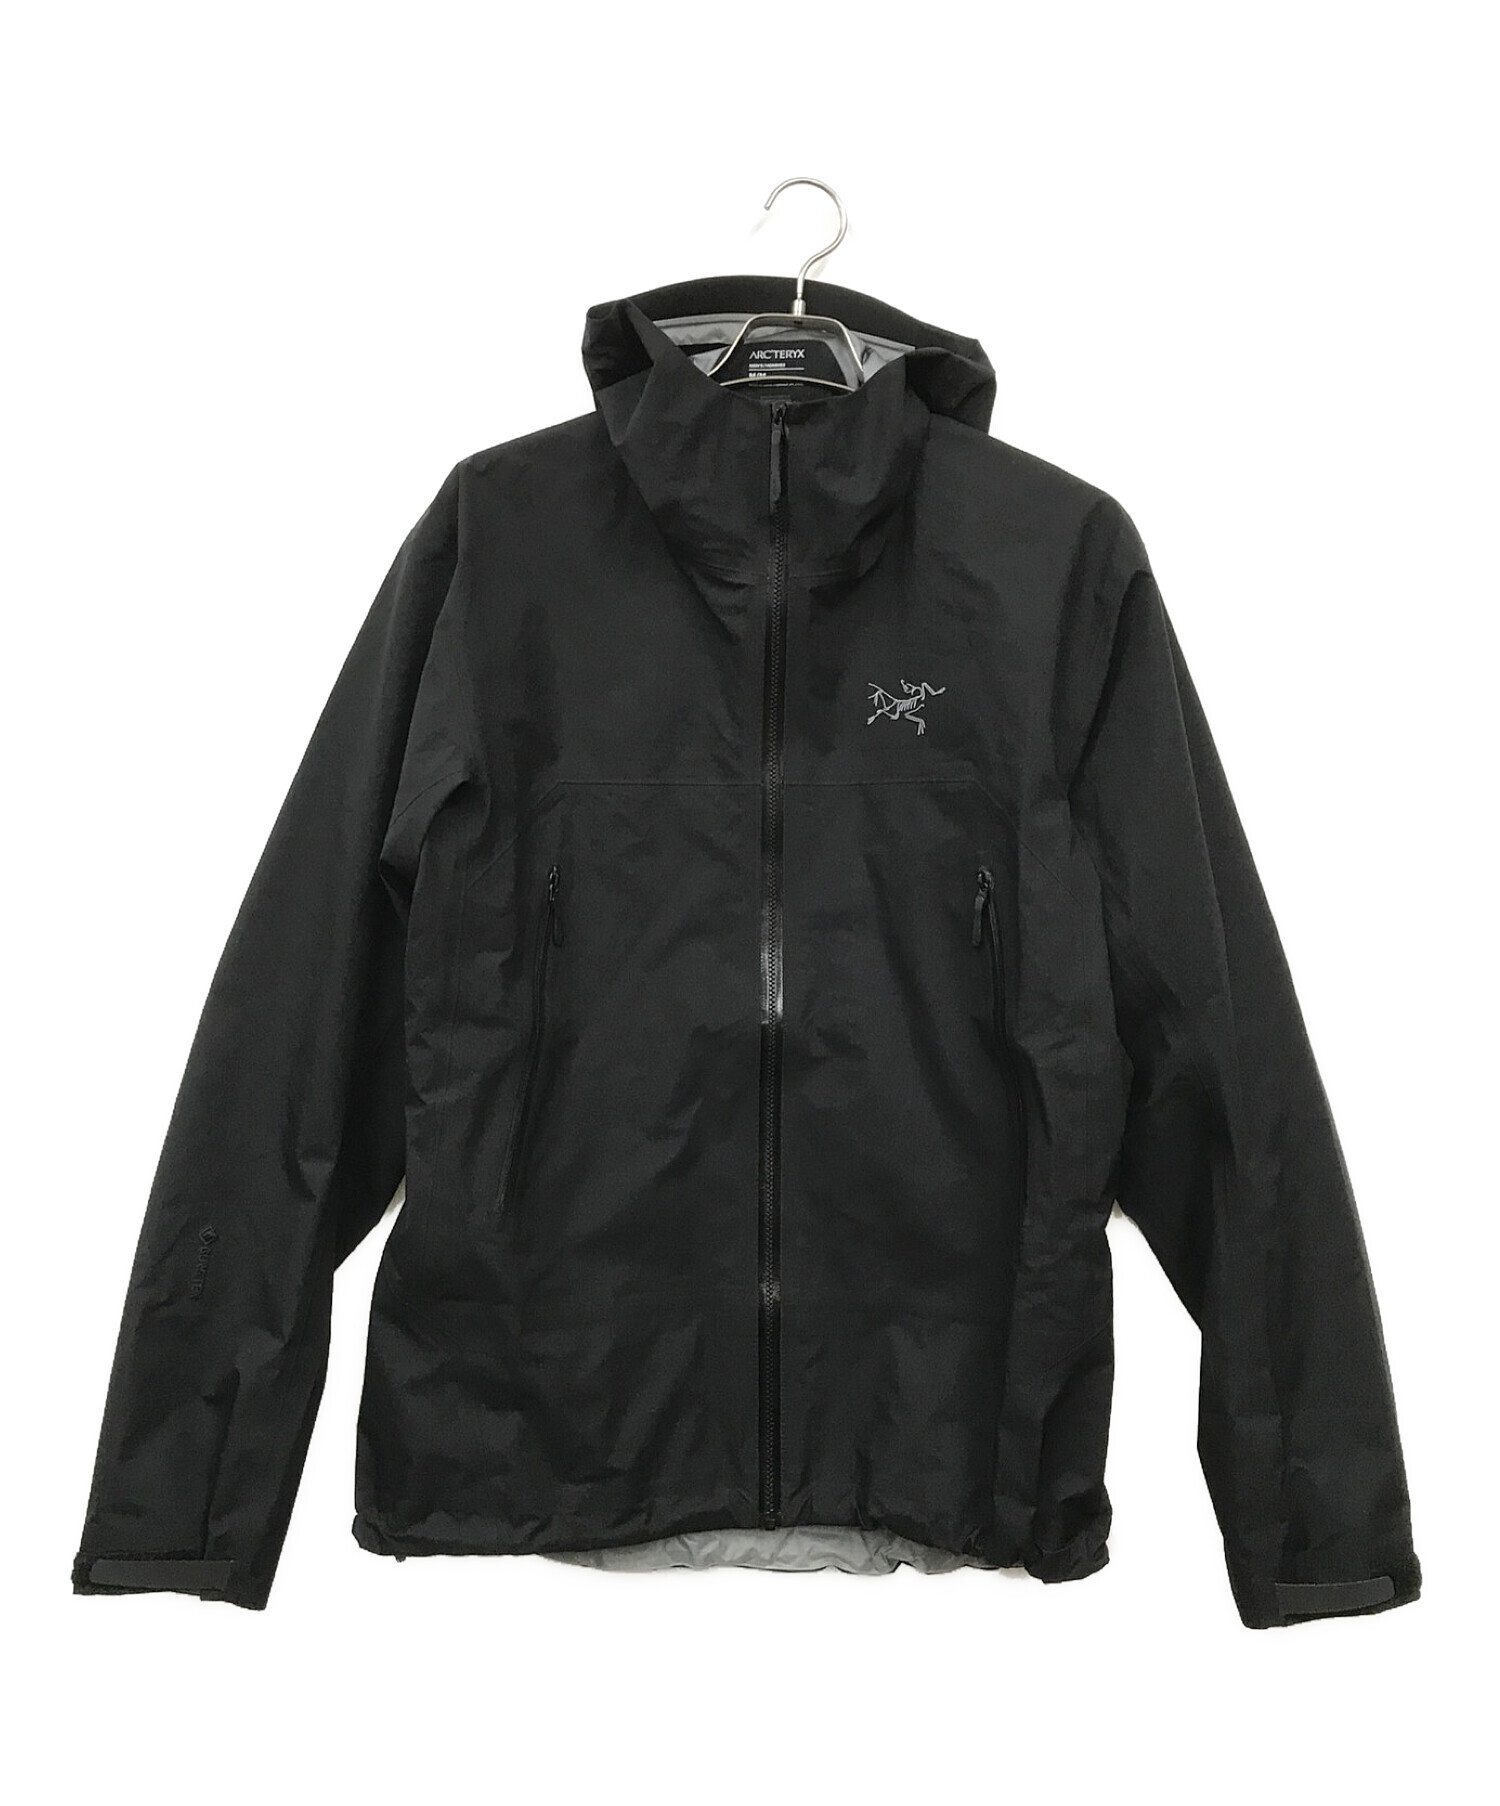 ARC'TERYX (アークテリクス) Beta jacket（ベータ ジャケット） ブラック サイズ:M/M